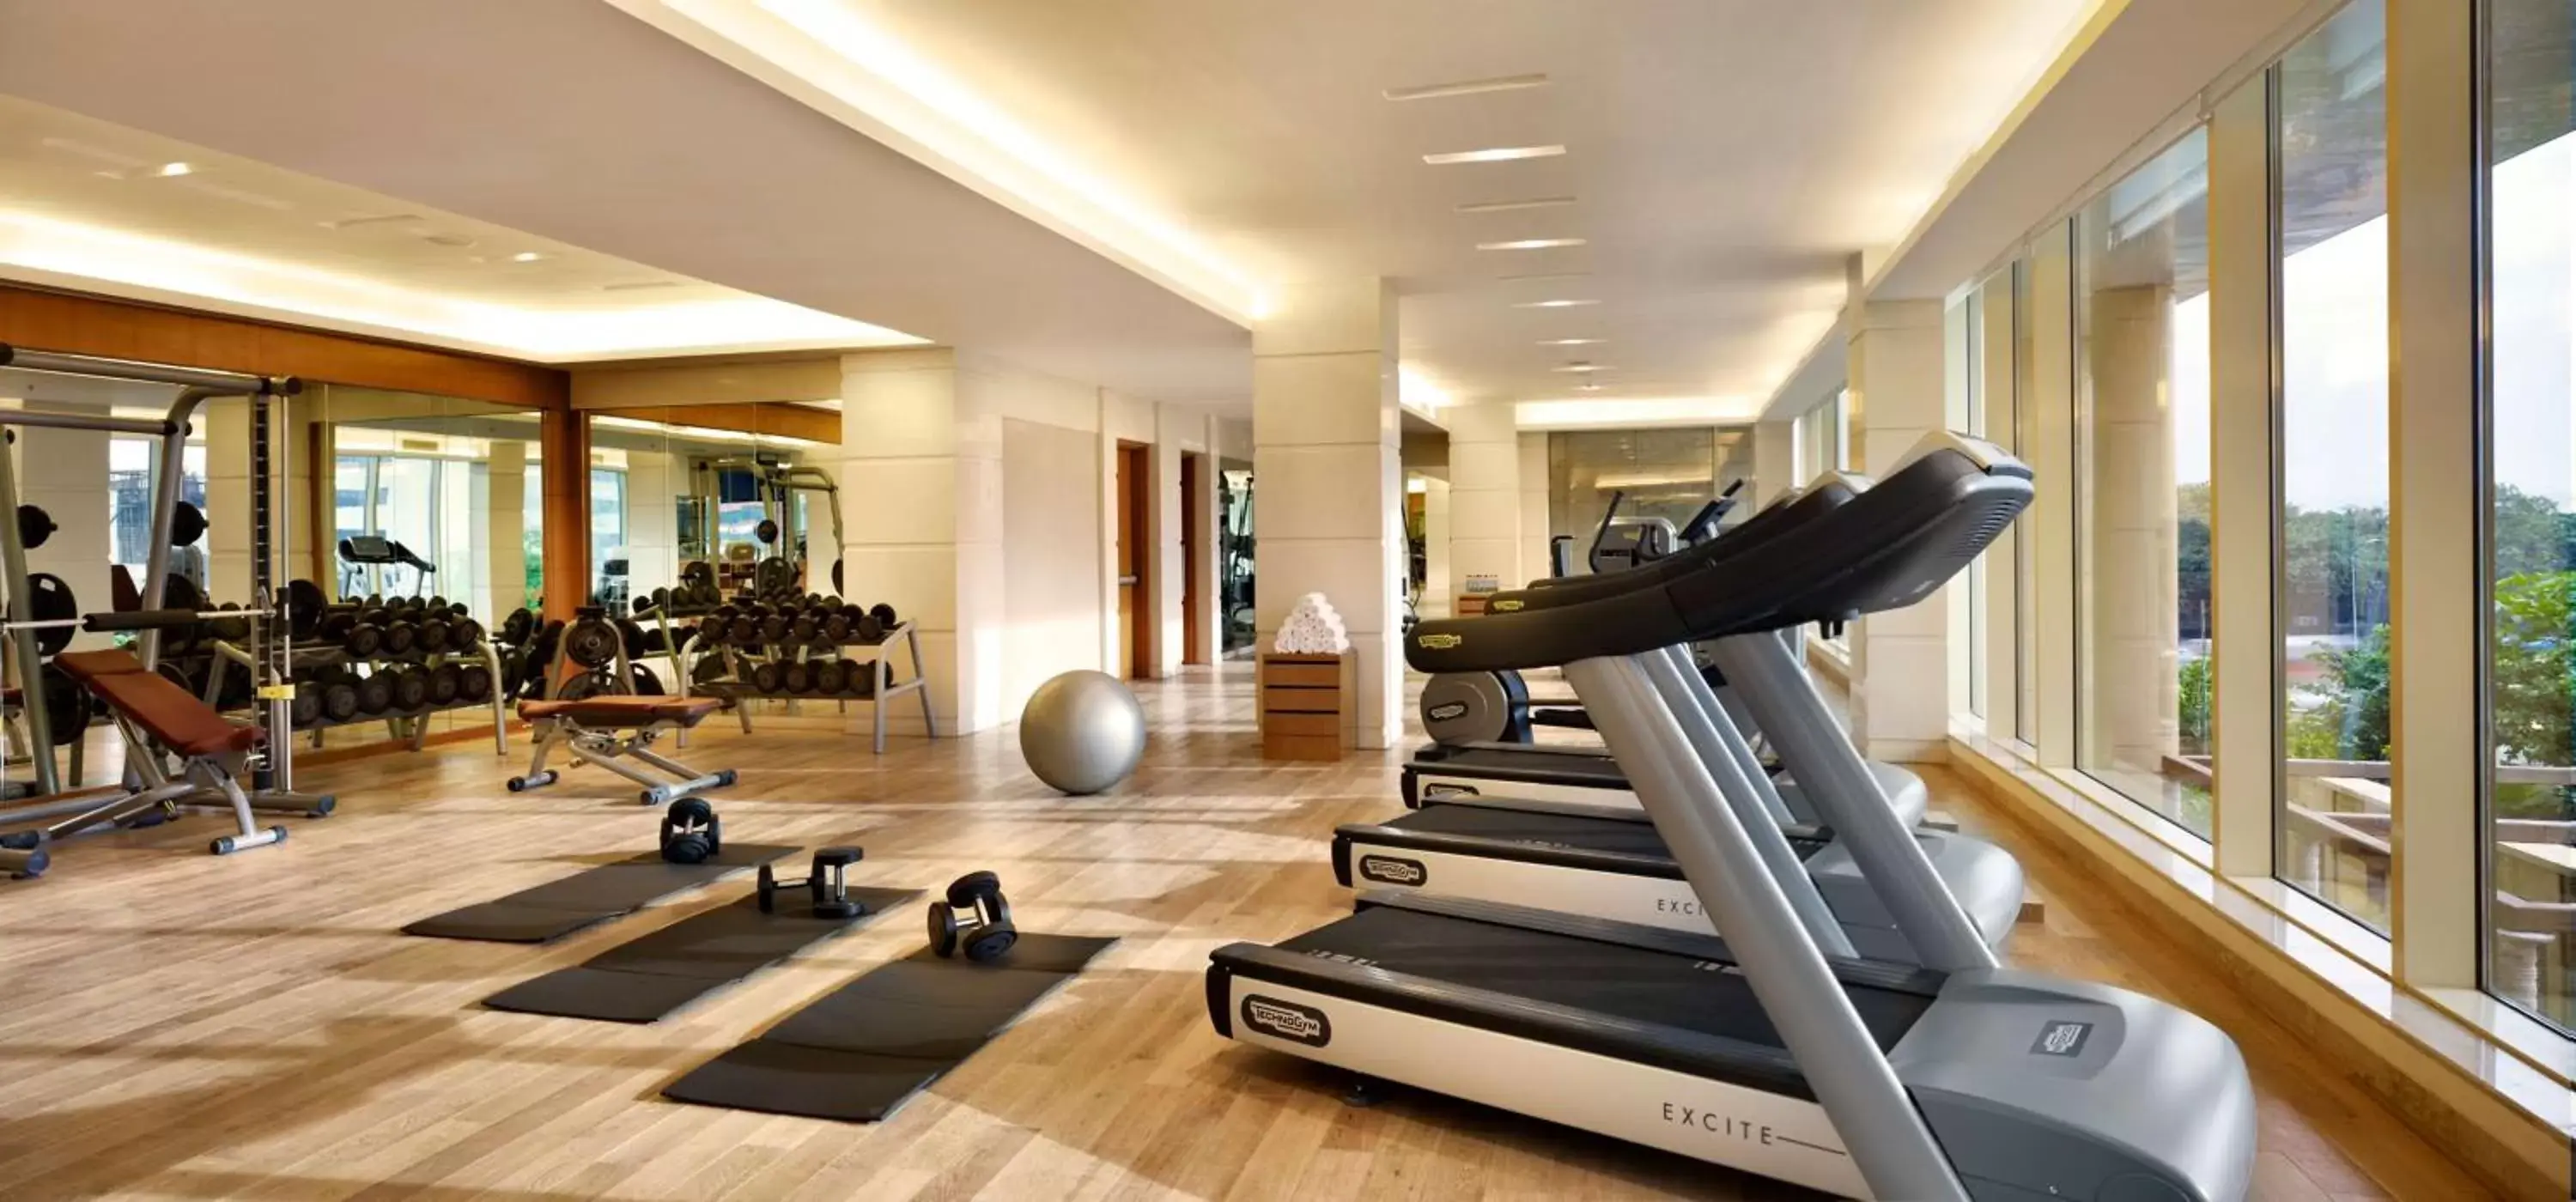 Fitness centre/facilities, Fitness Center/Facilities in Hyatt Regency Pune Hotel & Residences